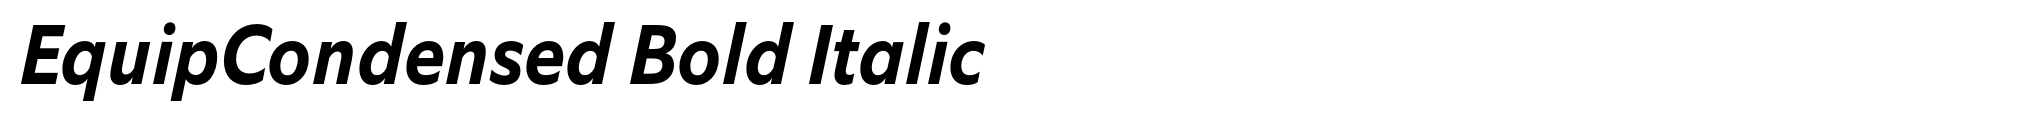 EquipCondensed Bold Italic image